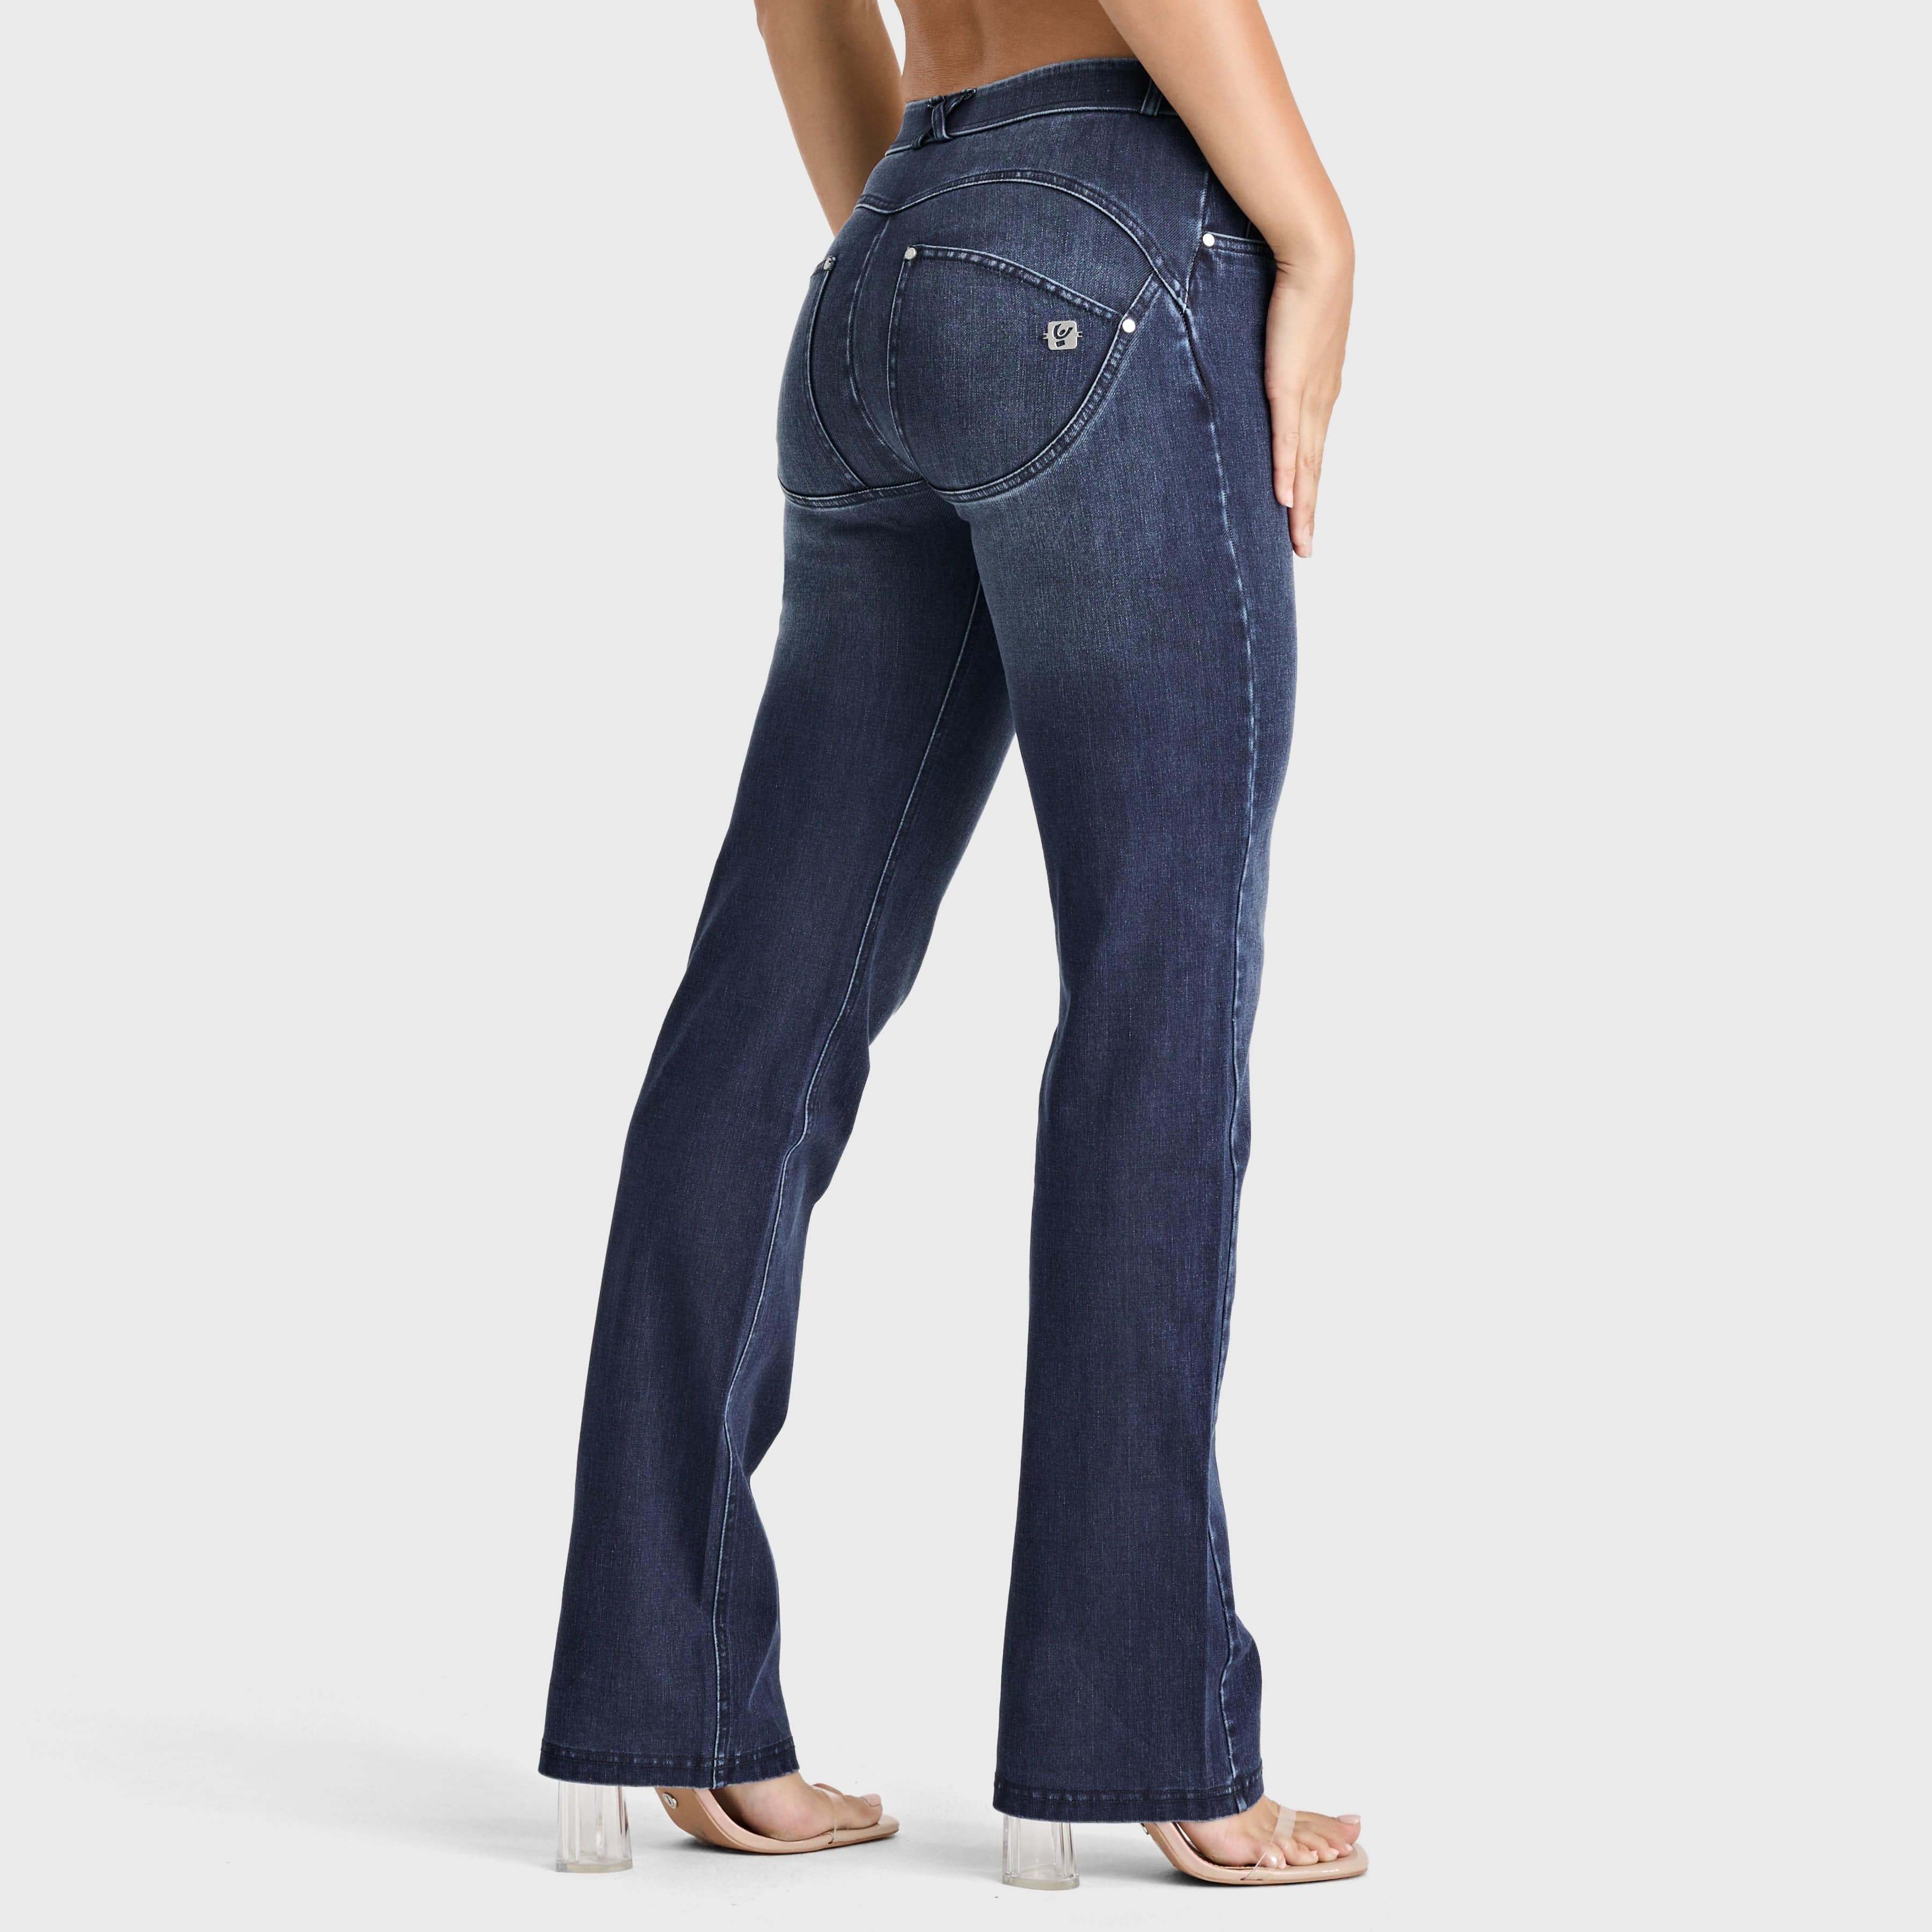 WR.UP® Snug Jeans - 2 Button High Waisted - Bootcut - Dark Blue + Blue Stitching 1